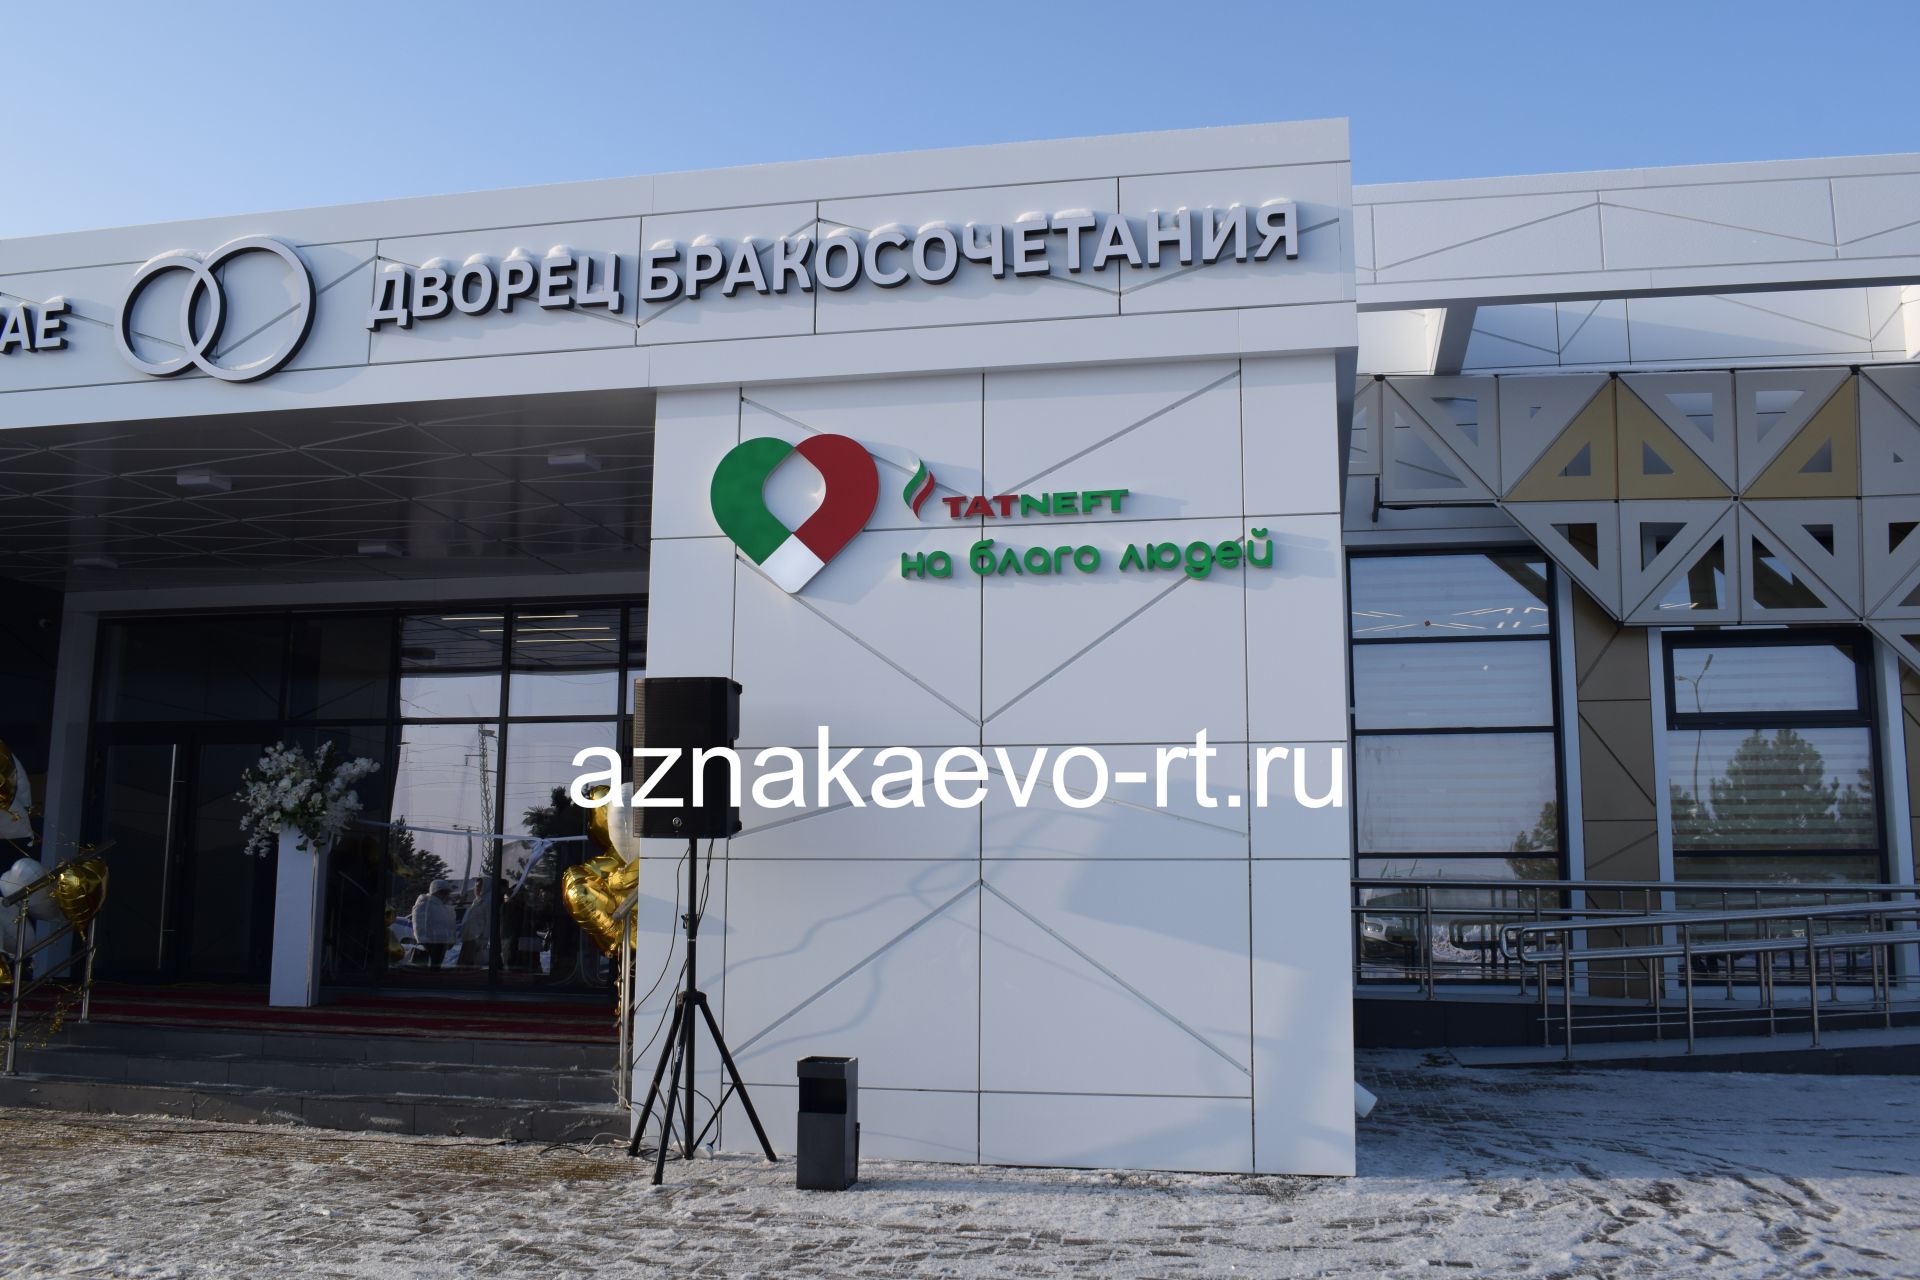 В Азнакаево открылось новое здание ЗАГС